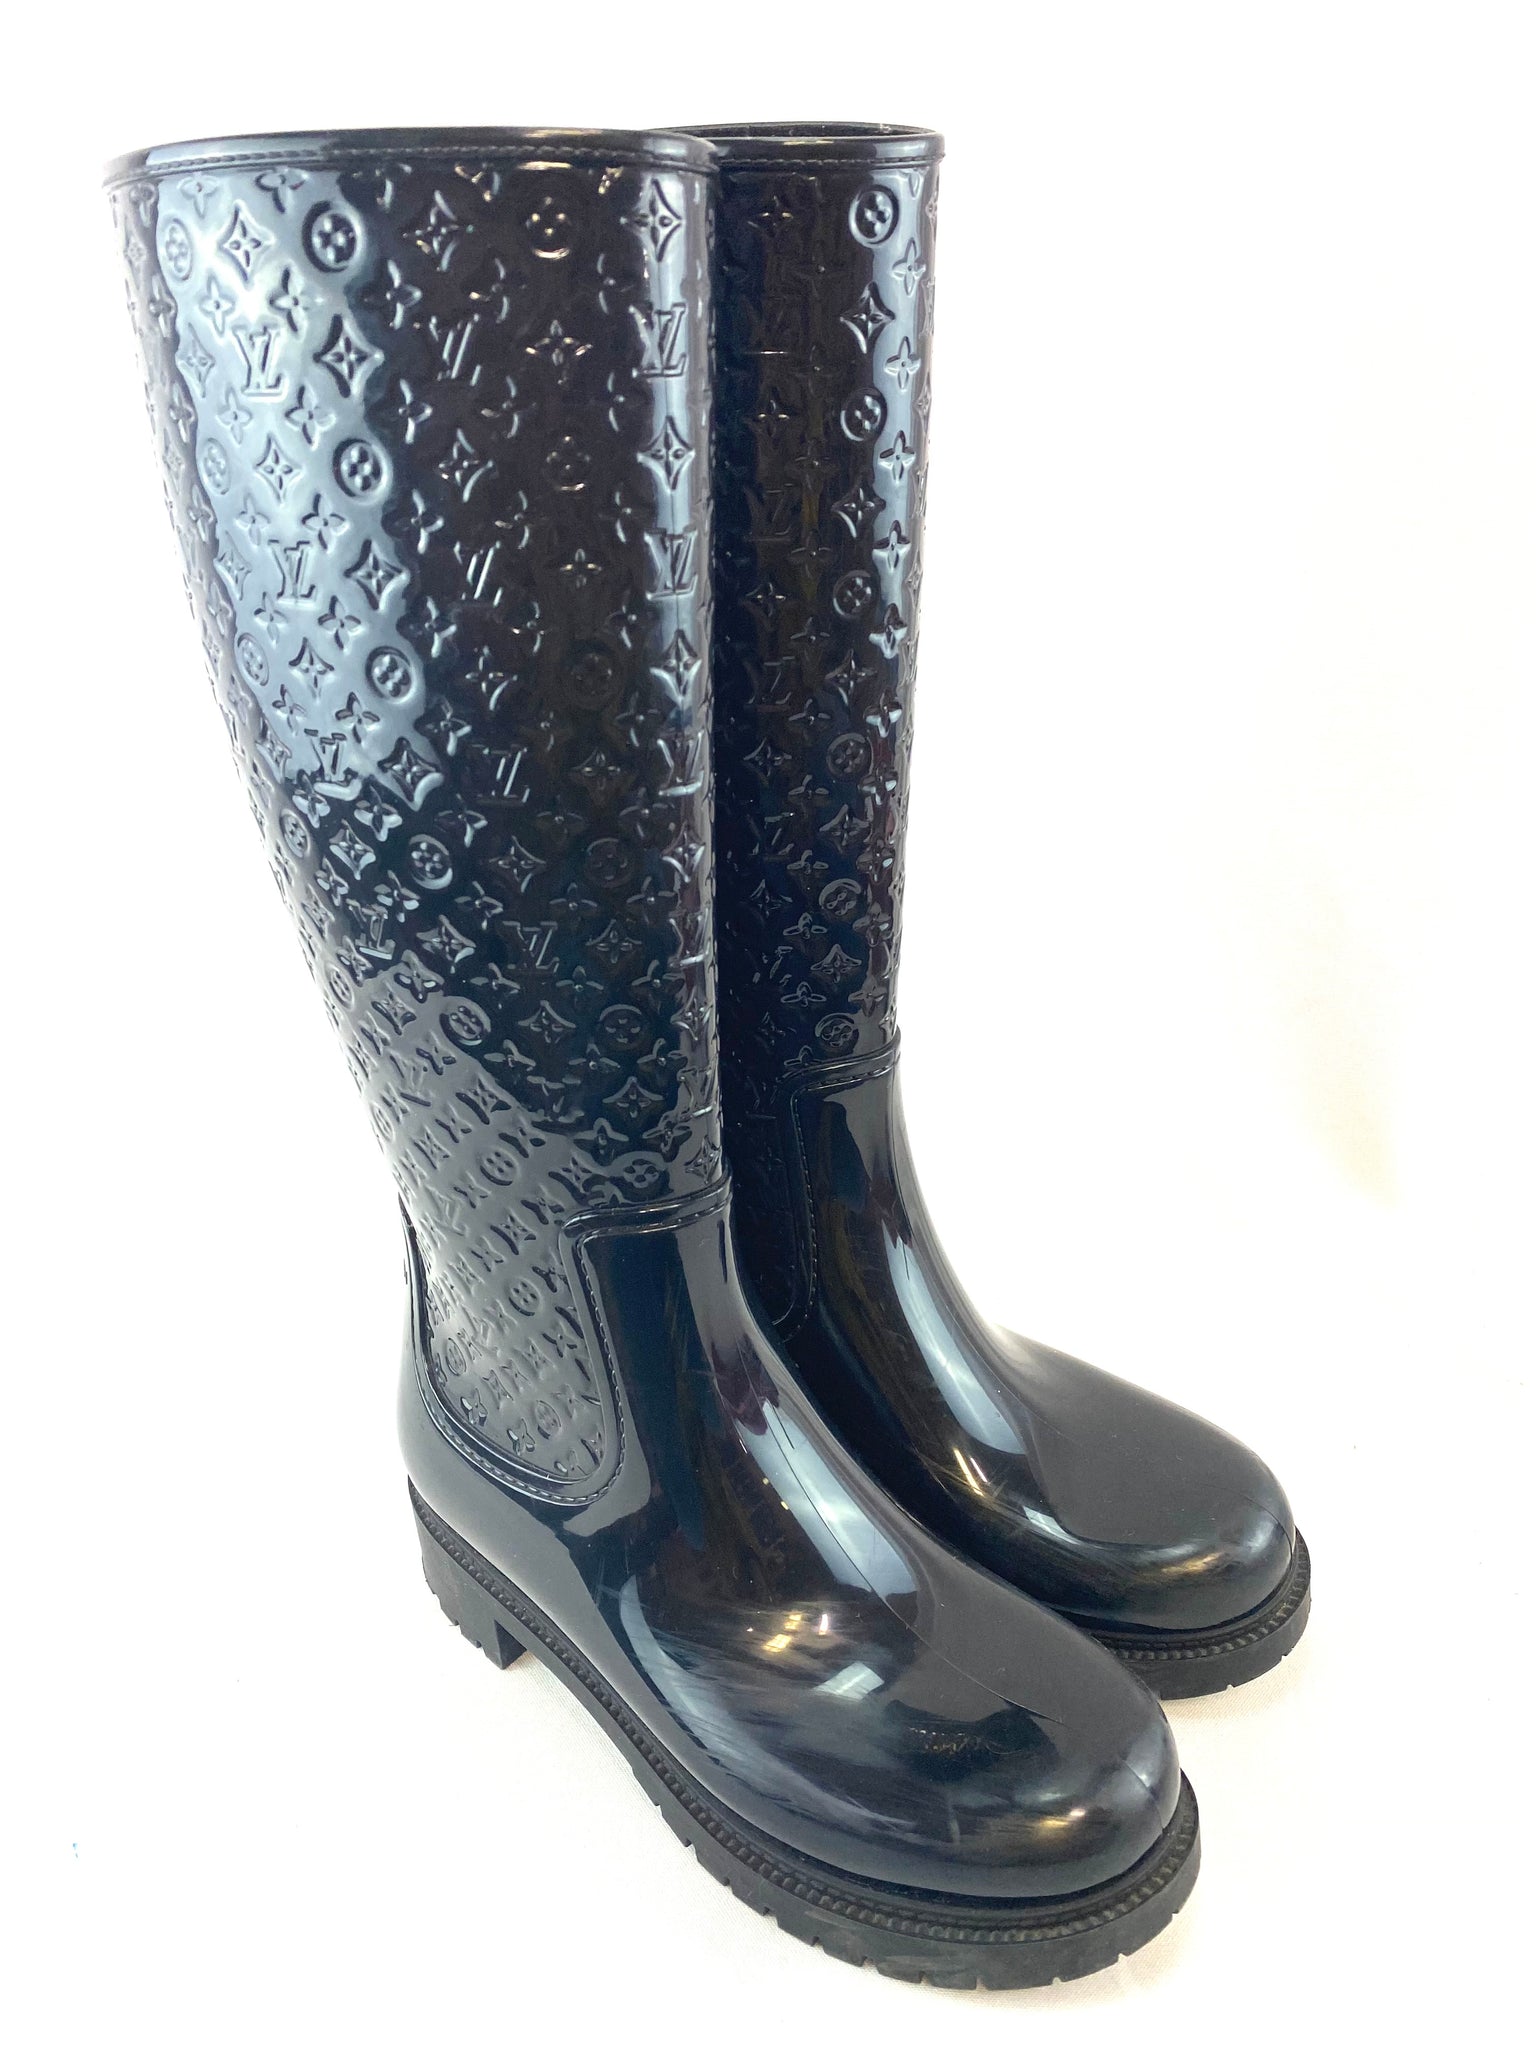 Louis Vuitton Leather Rain Boots - ShopStyle